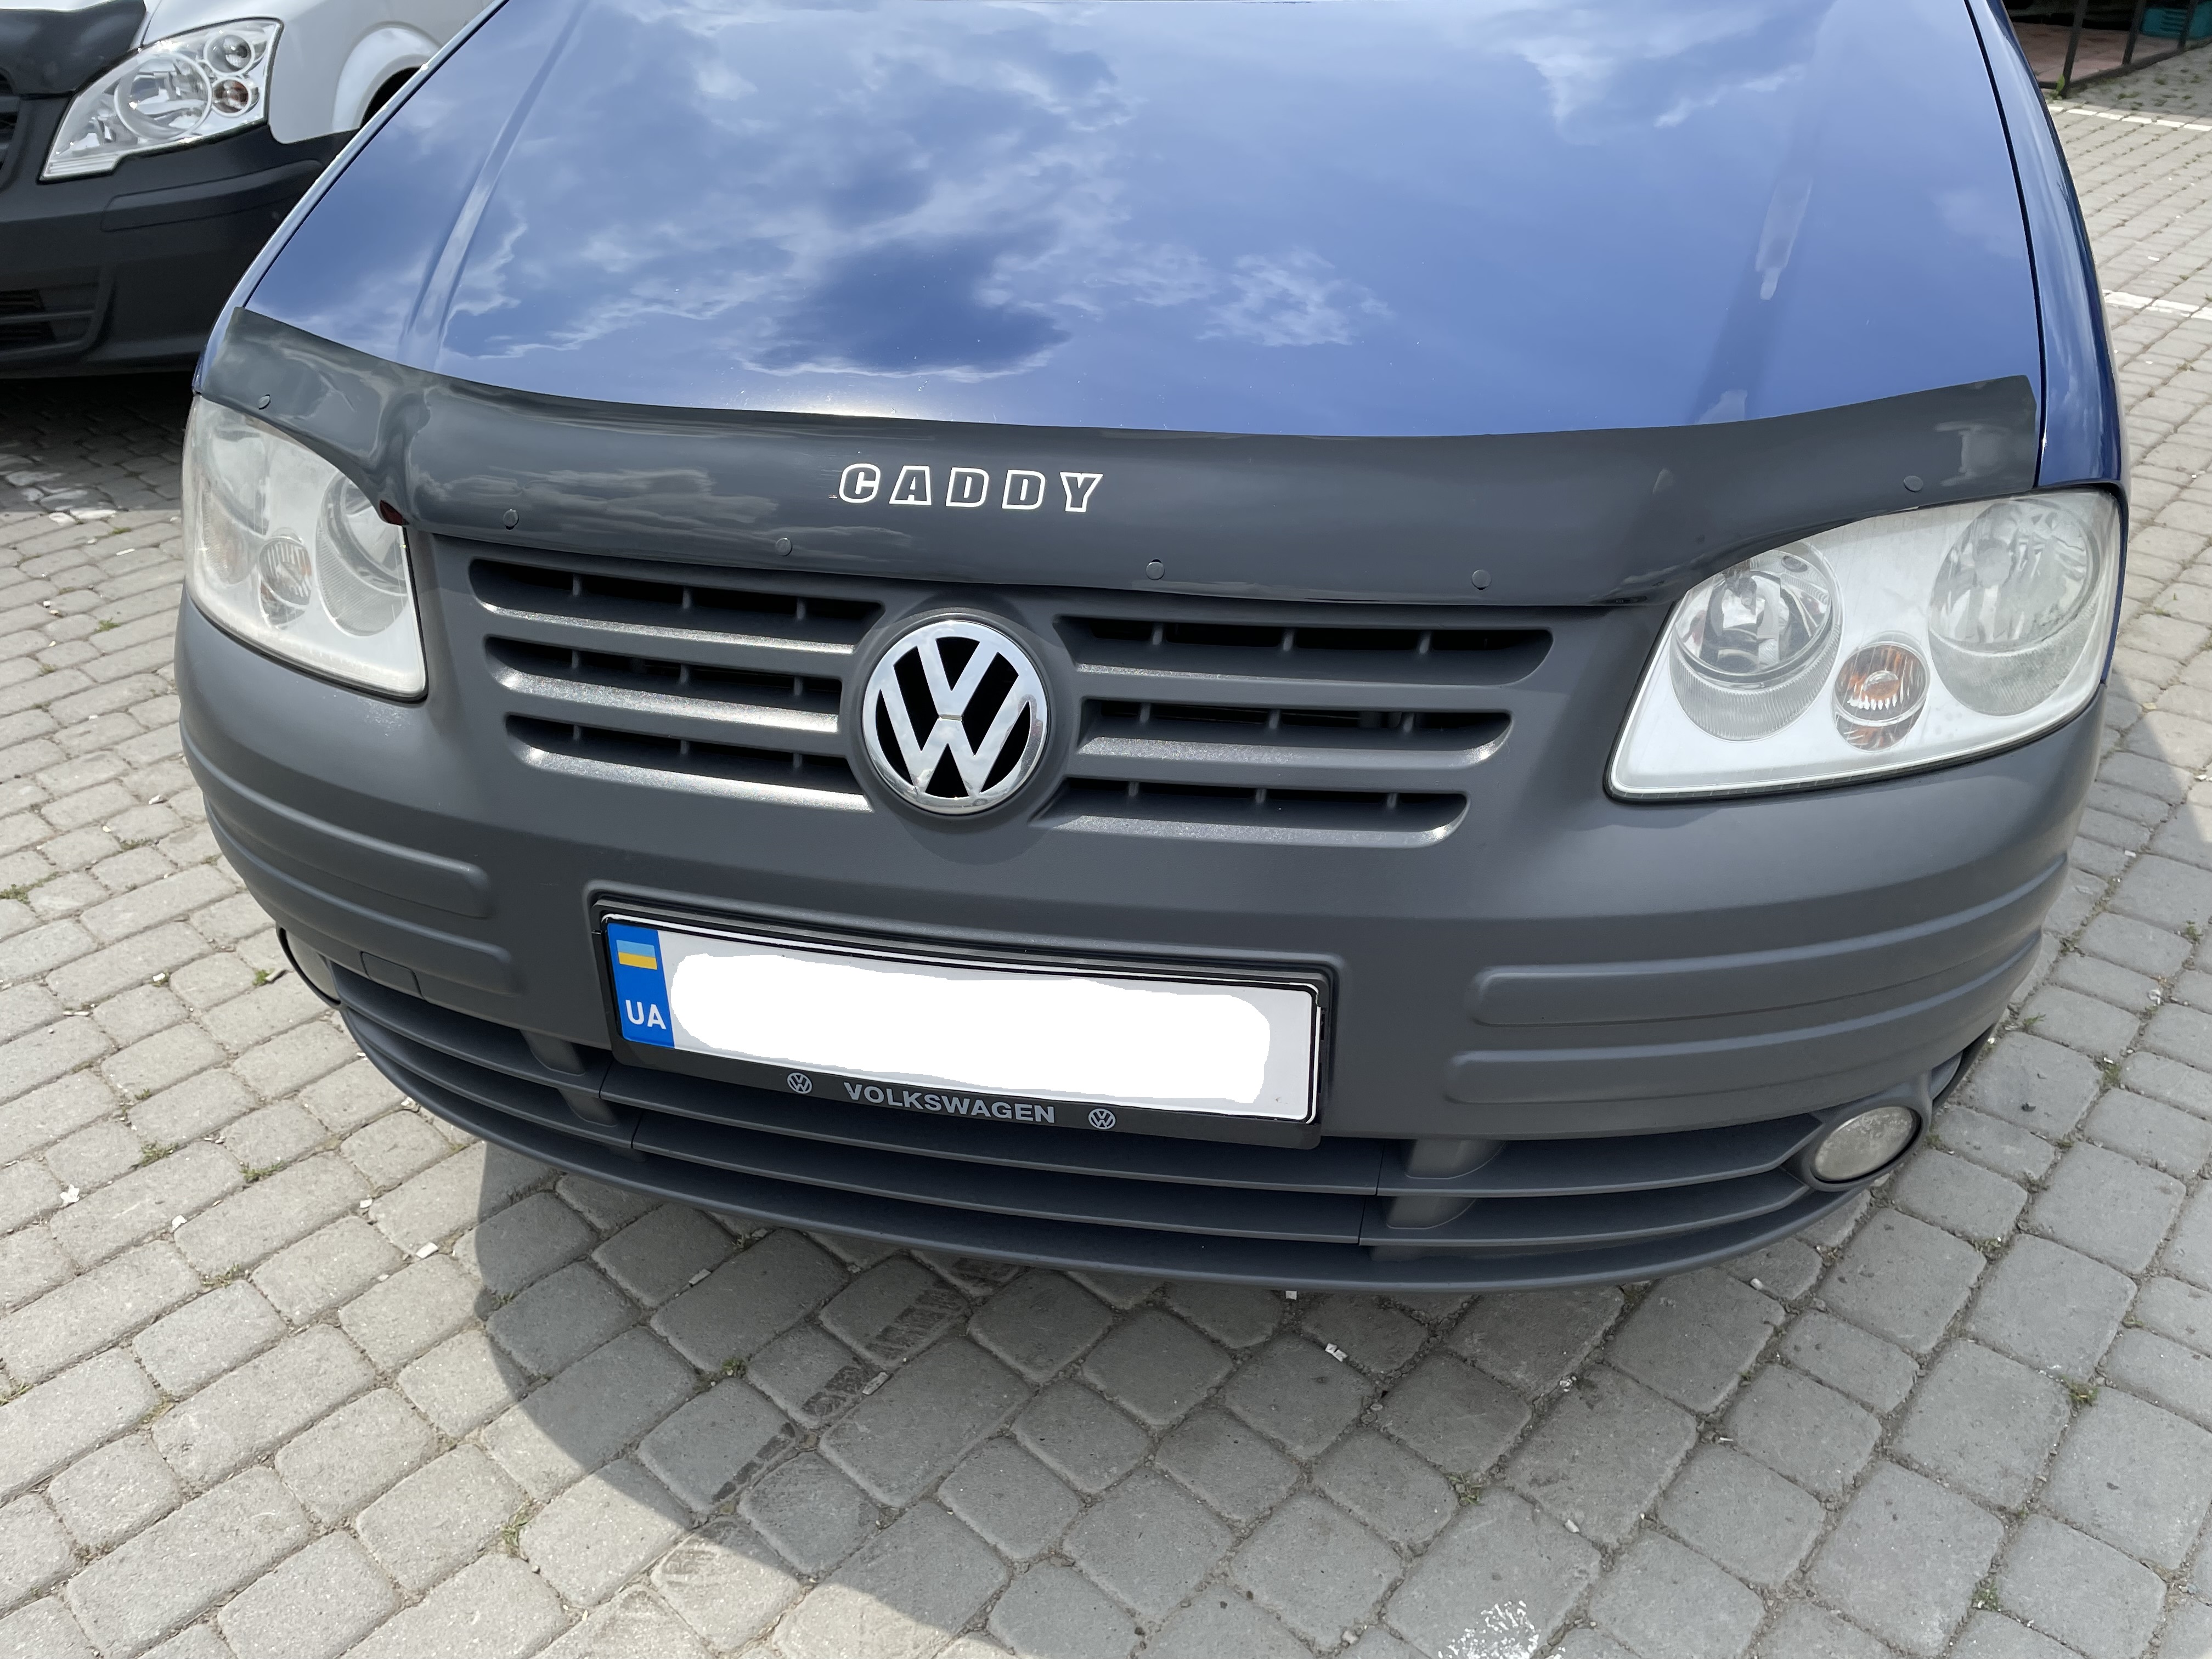 Д/к Volkswagen Caddy 2004-2010 (VIP)